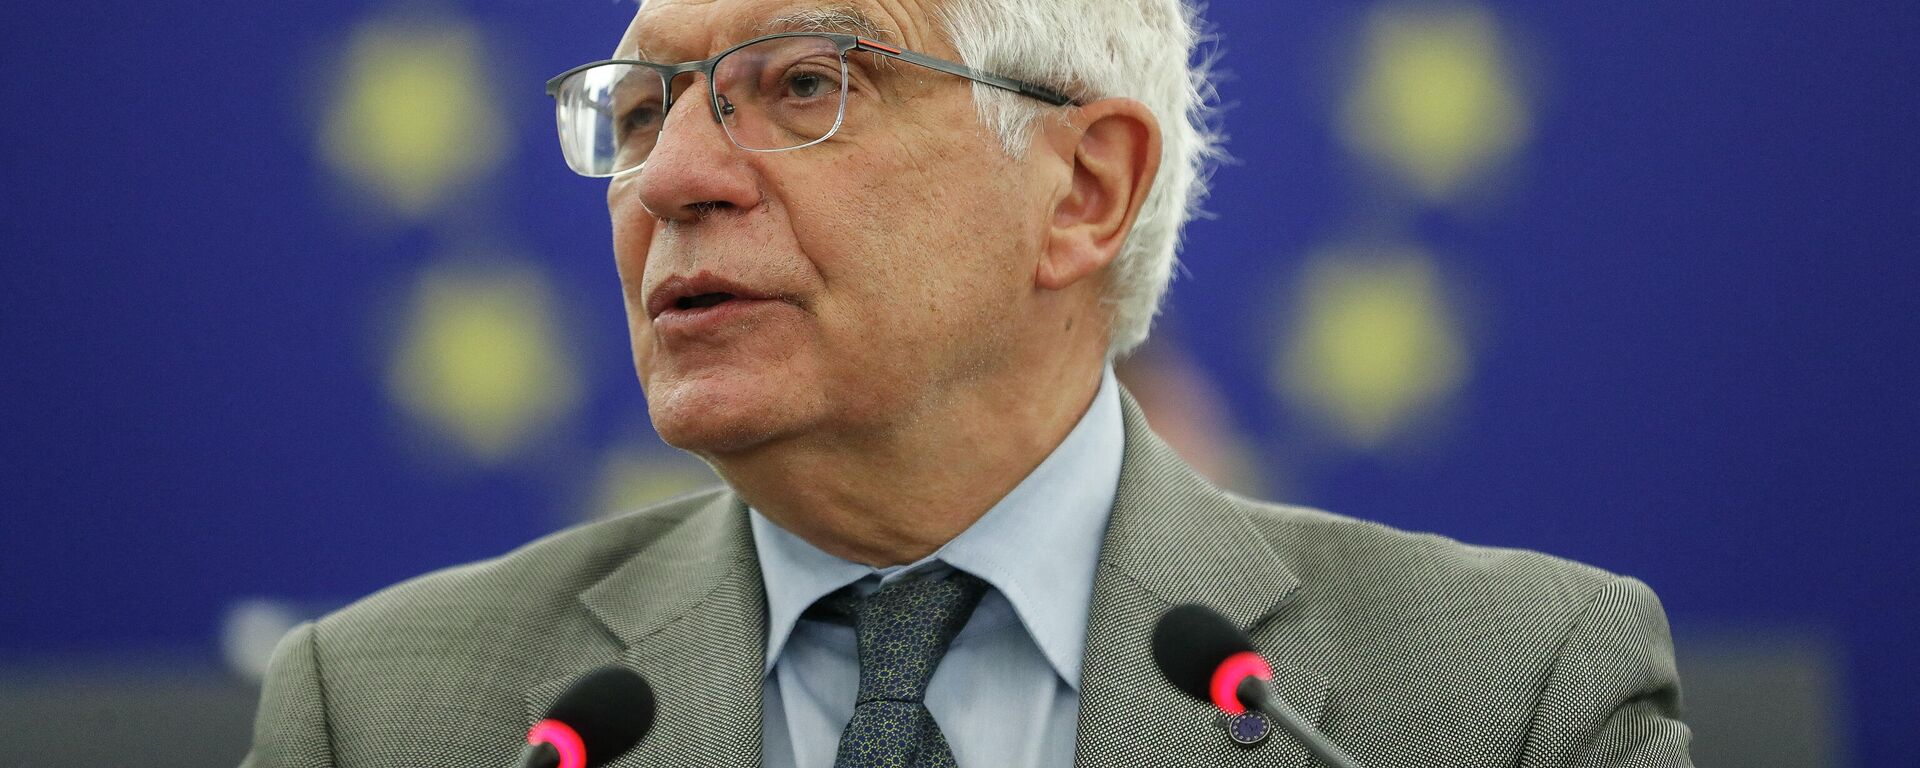 El alto representante para la Política Exterior de la Unión Europea, Josep Borrell - Sputnik Mundo, 1920, 17.09.2021